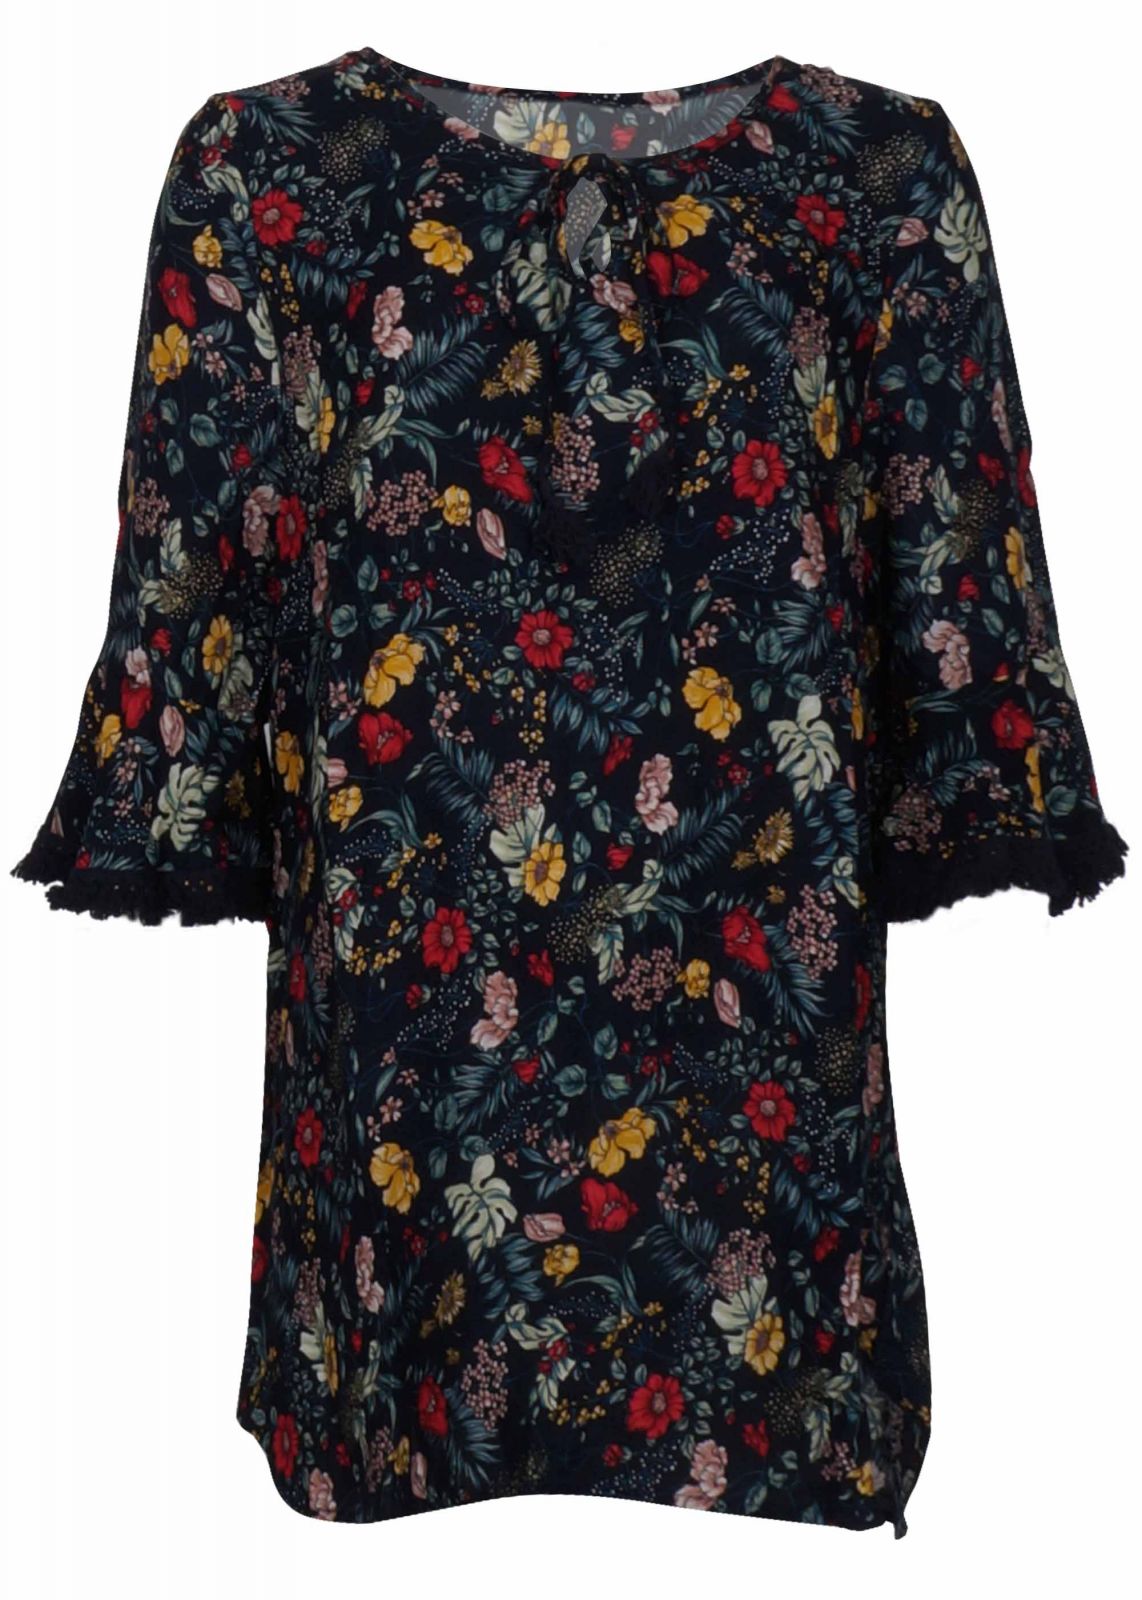 Γυναικείο καφτάνι φόρεμα παραλίας print floral. Beachwear Collection. NAVY